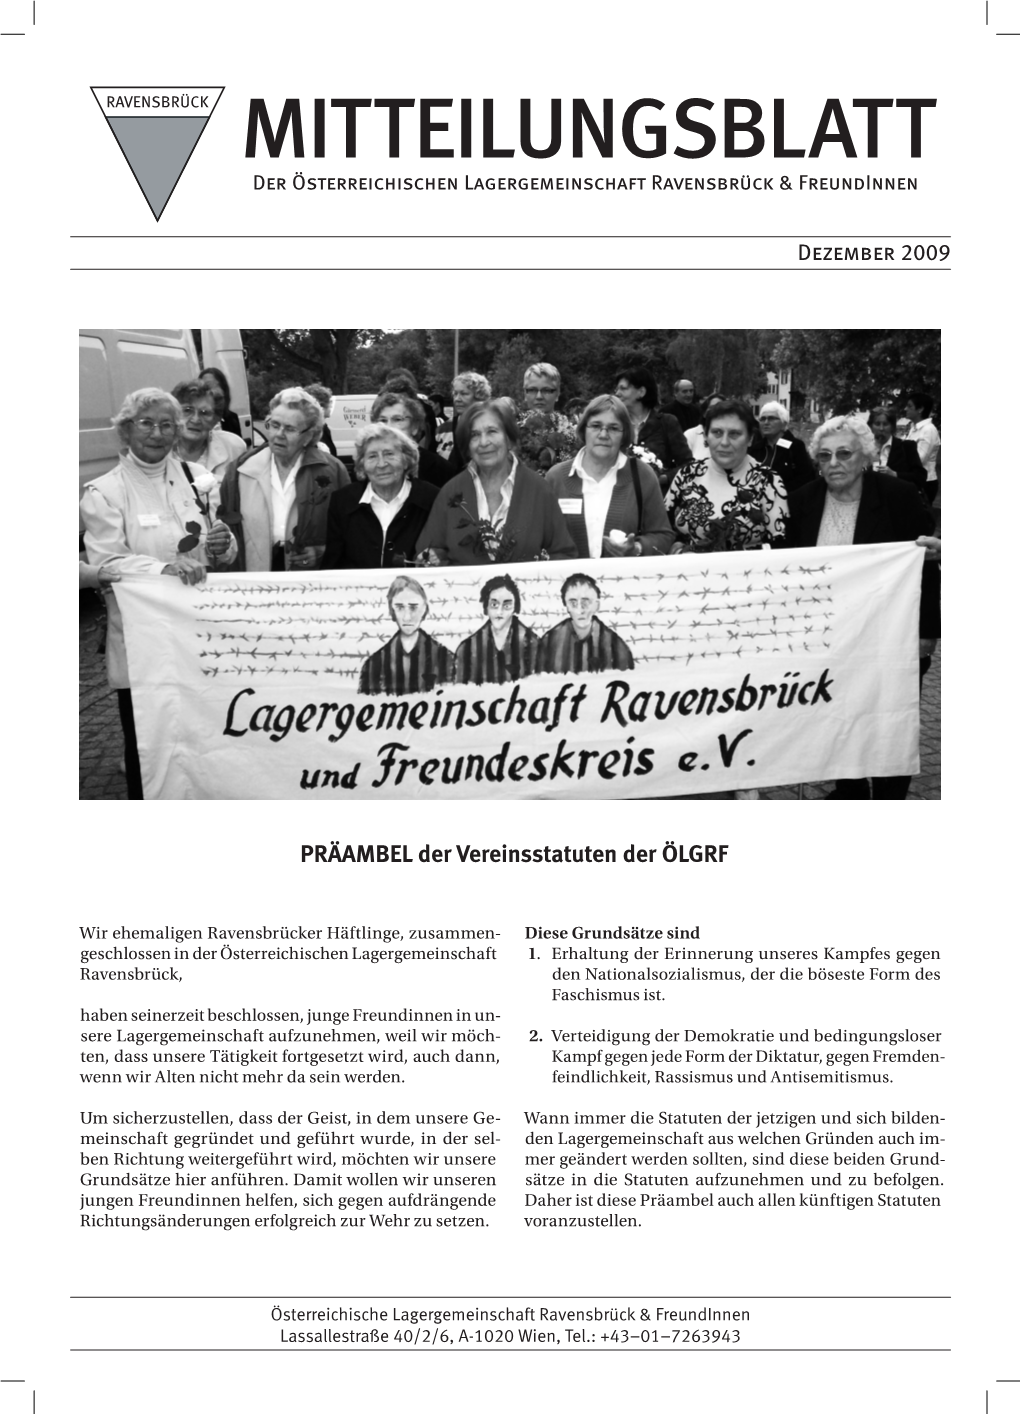 Mitteilungsblatt 2009